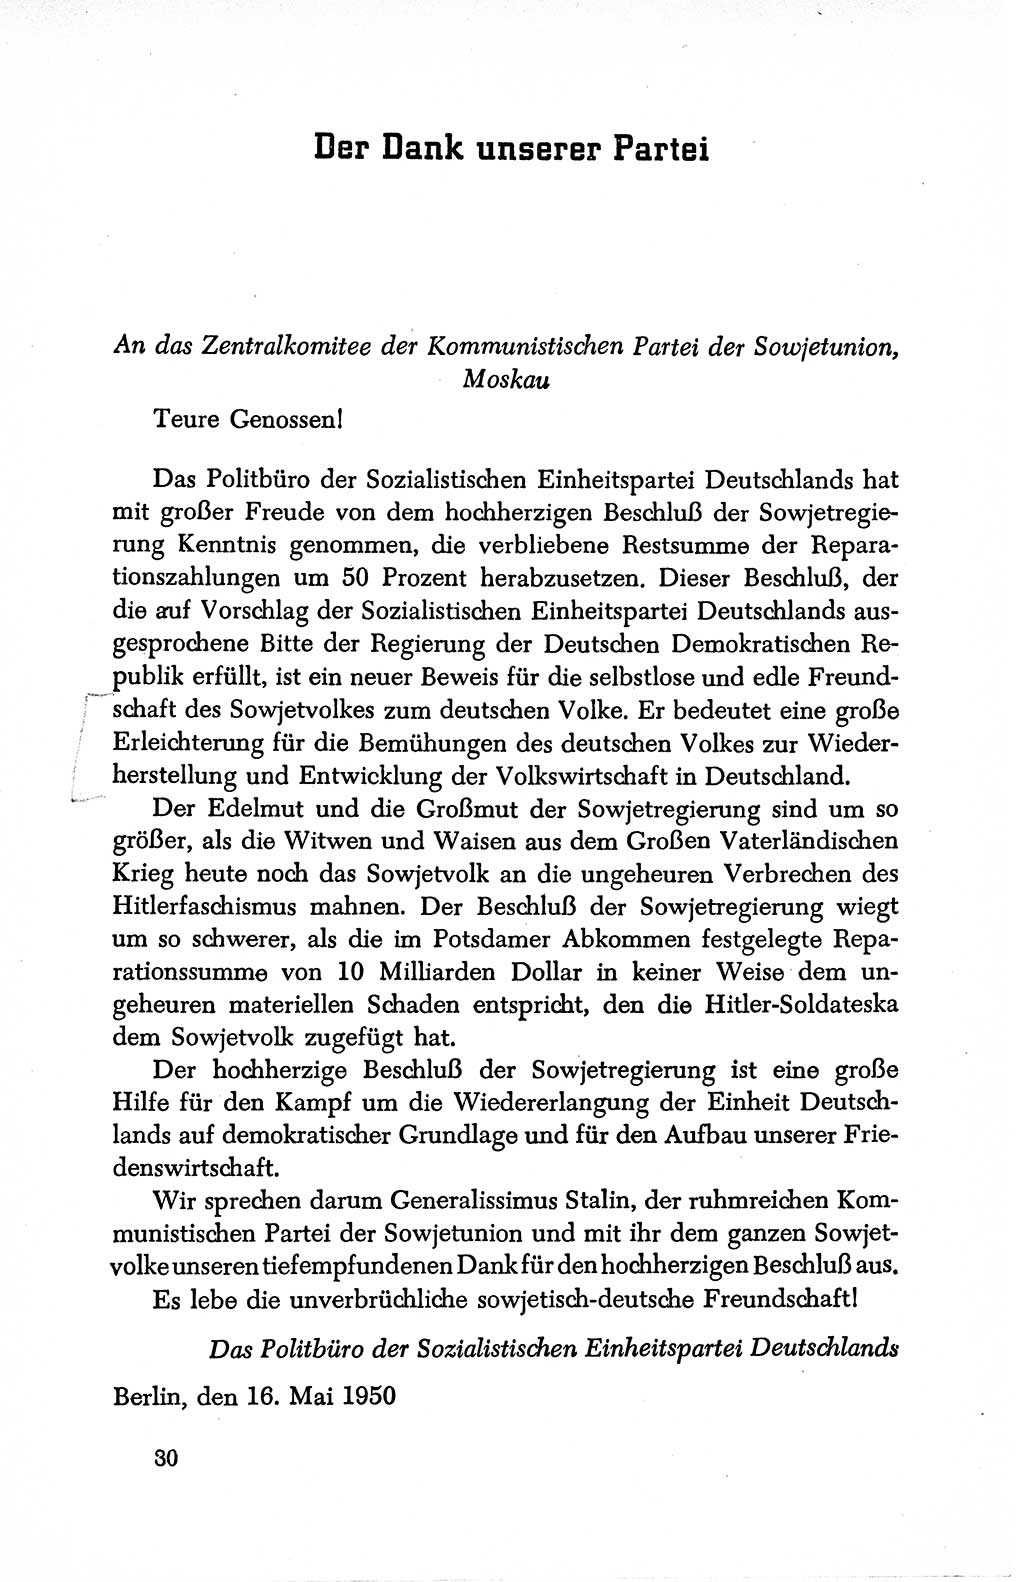 Dokumente der Sozialistischen Einheitspartei Deutschlands (SED) [Deutsche Demokratische Republik (DDR)] 1950-1952, Seite 30 (Dok. SED DDR 1950-1952, S. 30)